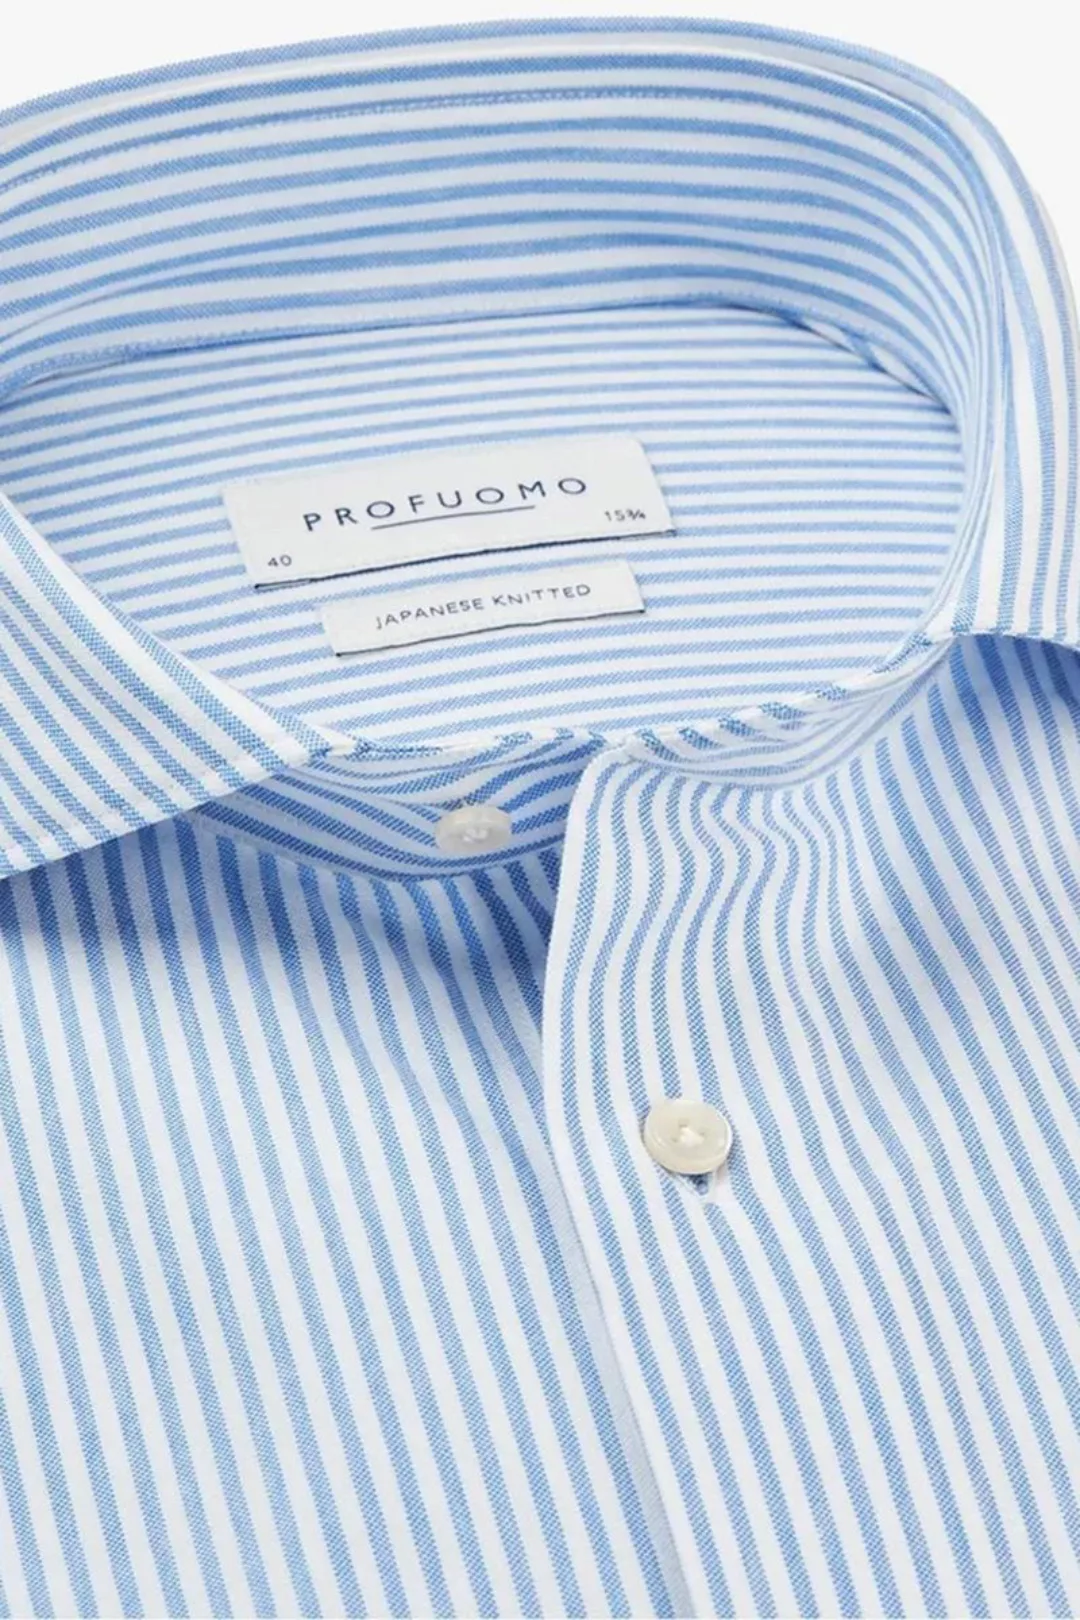 Profuomo Hemd Japanese Knitted Blau Streifen - Größe 40 günstig online kaufen